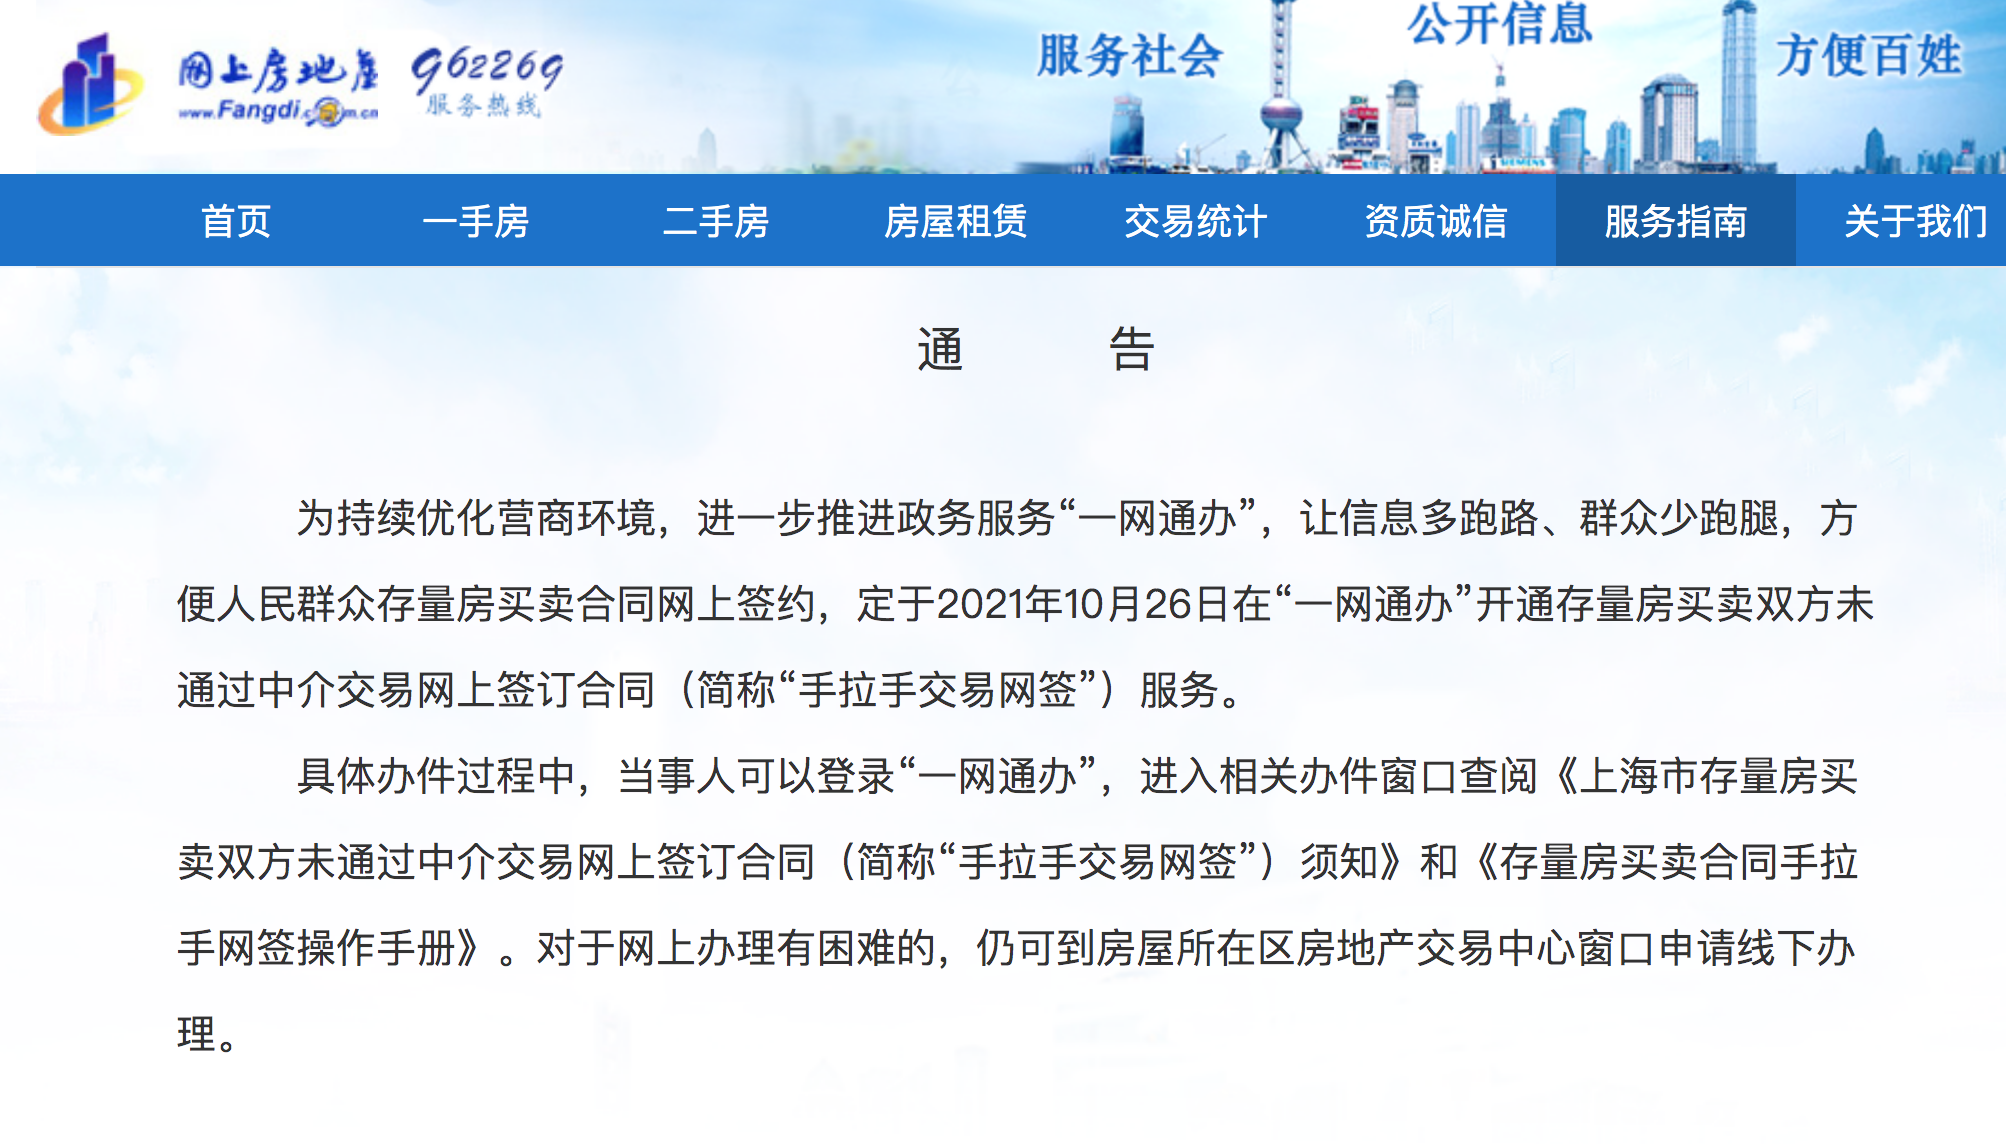 “上海开通二手房“手拉手”交易网上签合同 目前成交占比较小